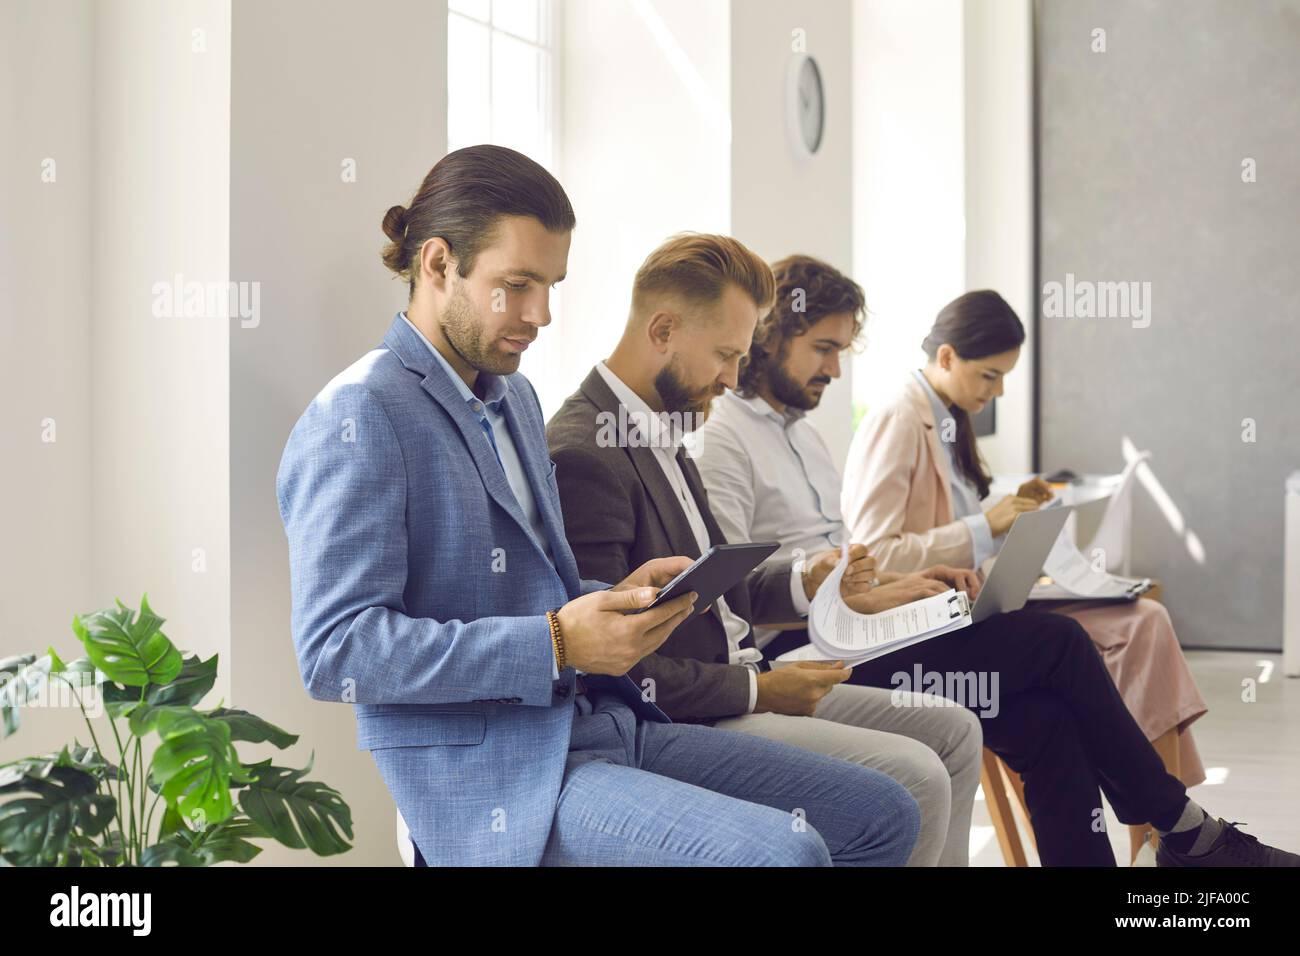 Grupo de gente ocupada sentada en la fila en la oficina y esperando una cita de negocios Foto de stock